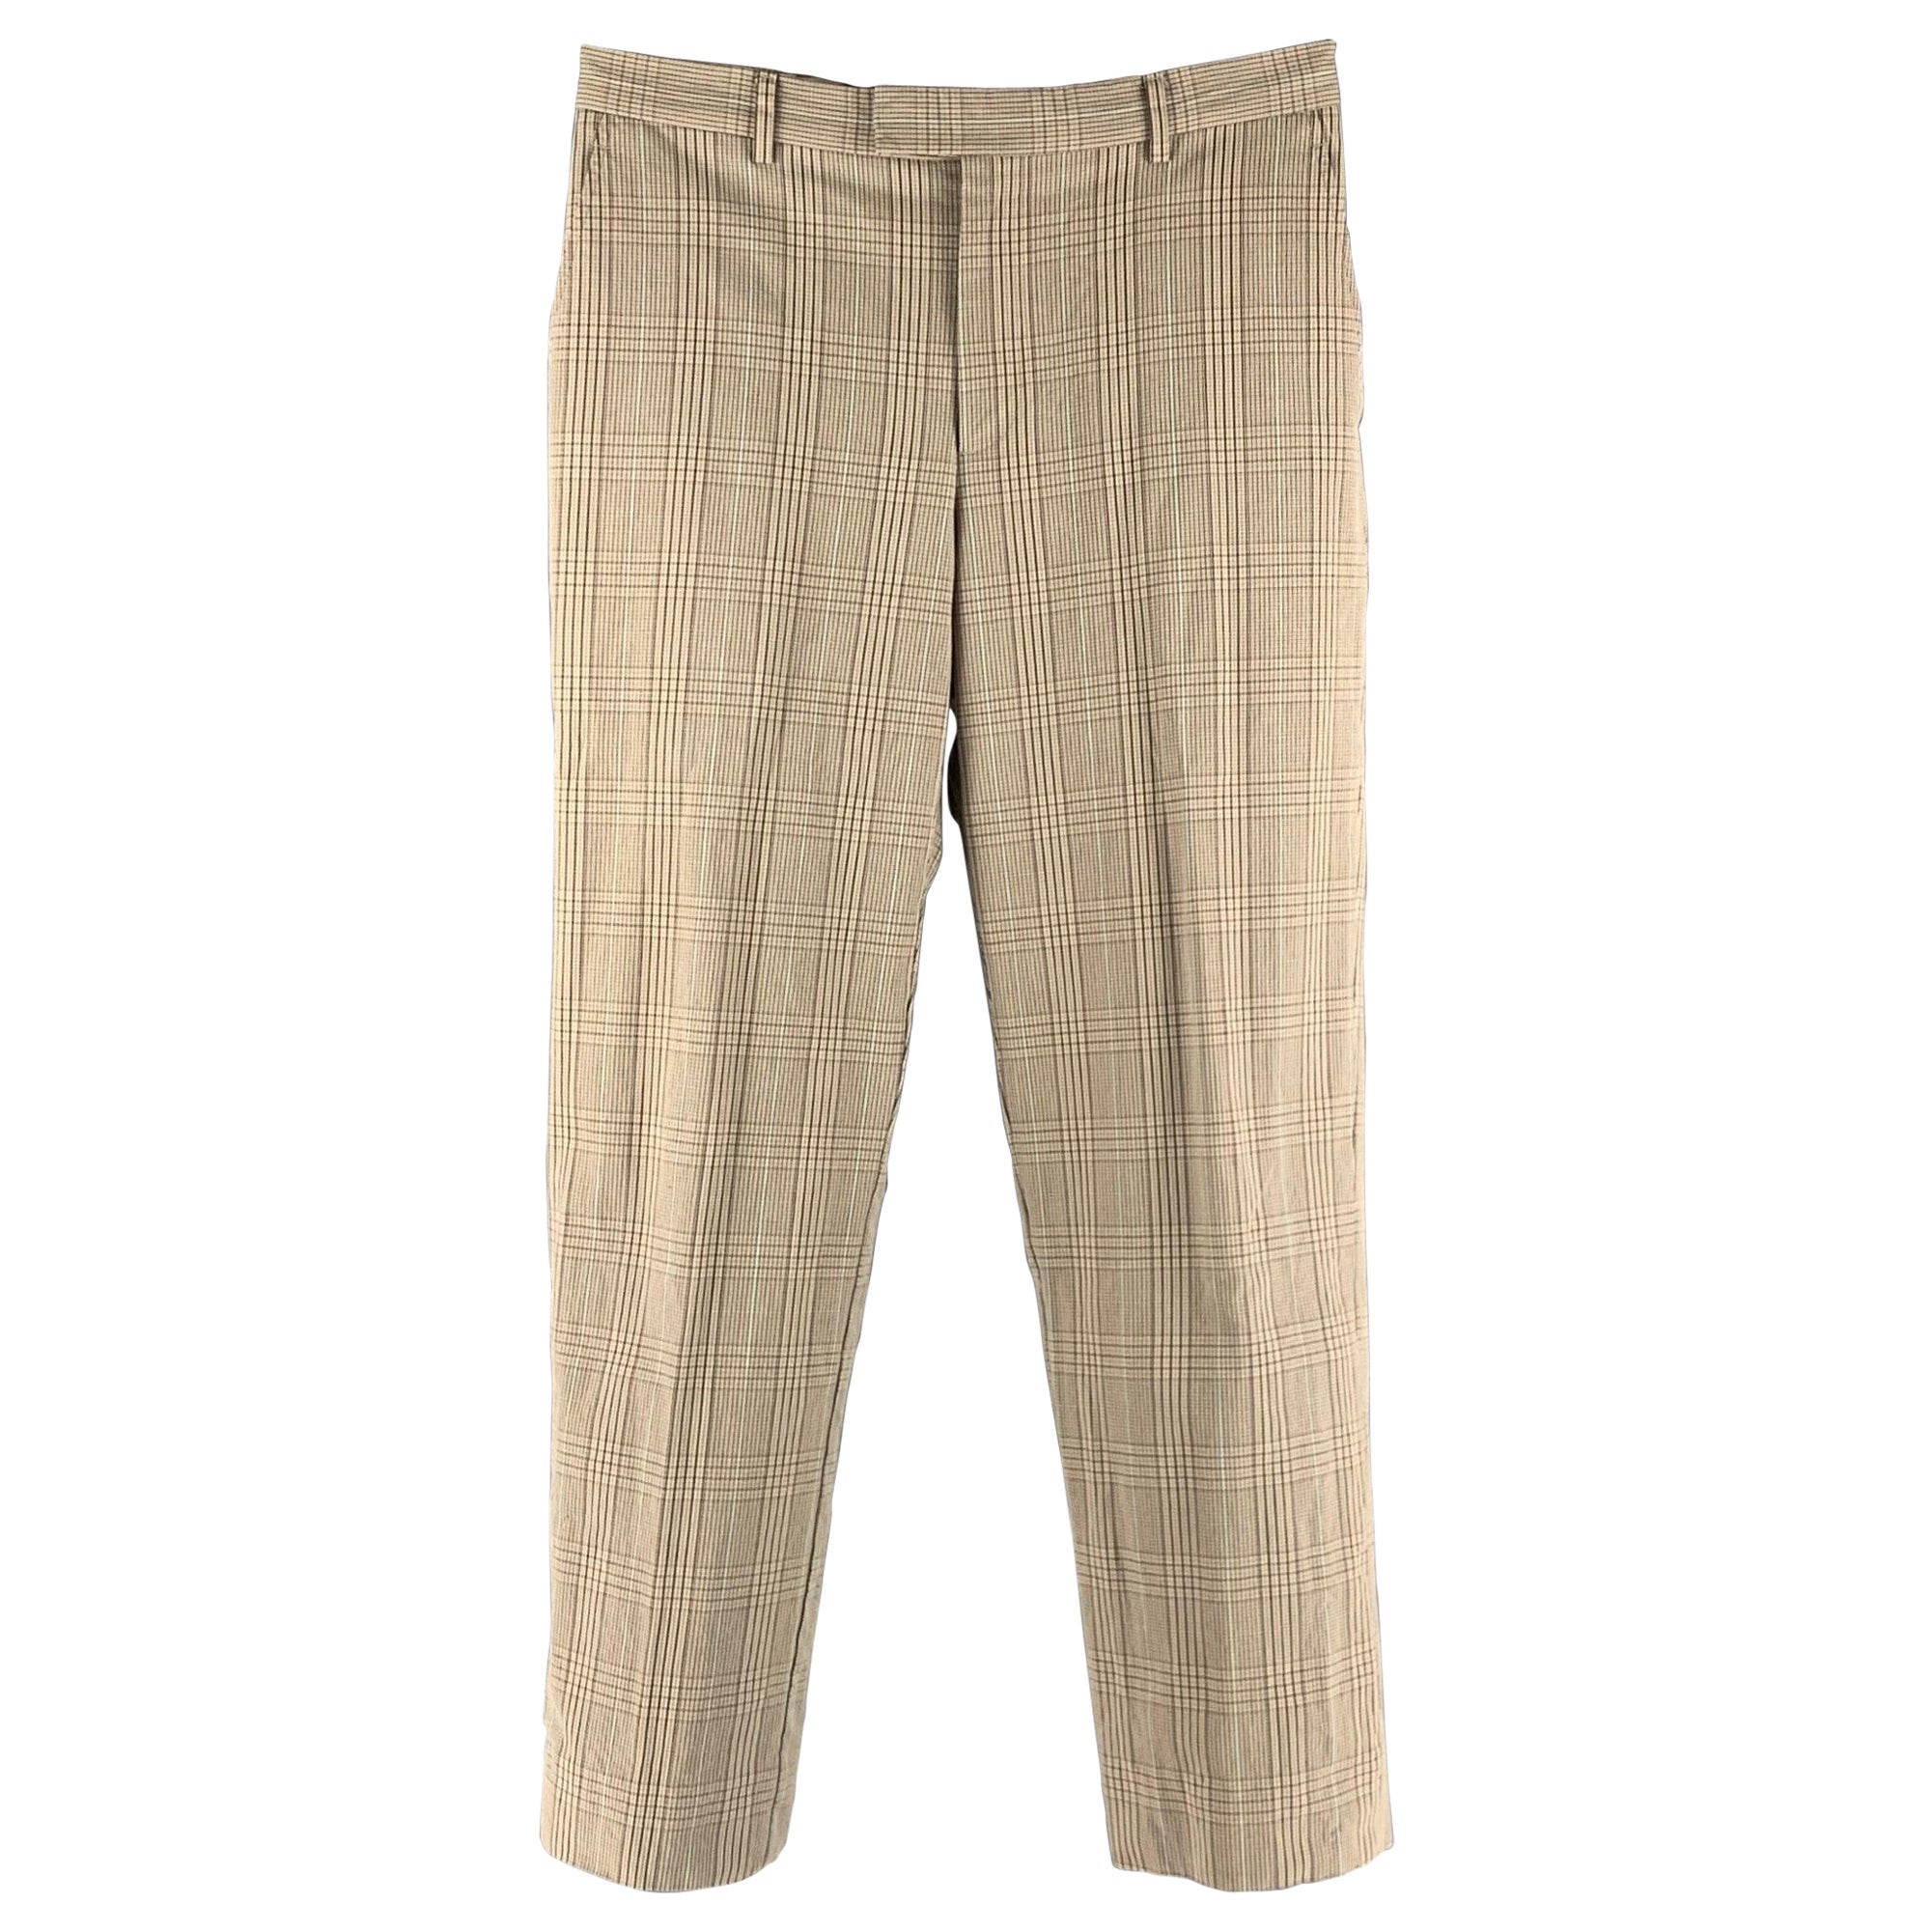 PAUL SMITH Taille 30 Pantalon habillé en coton à carreaux beige et Brown à devant plat